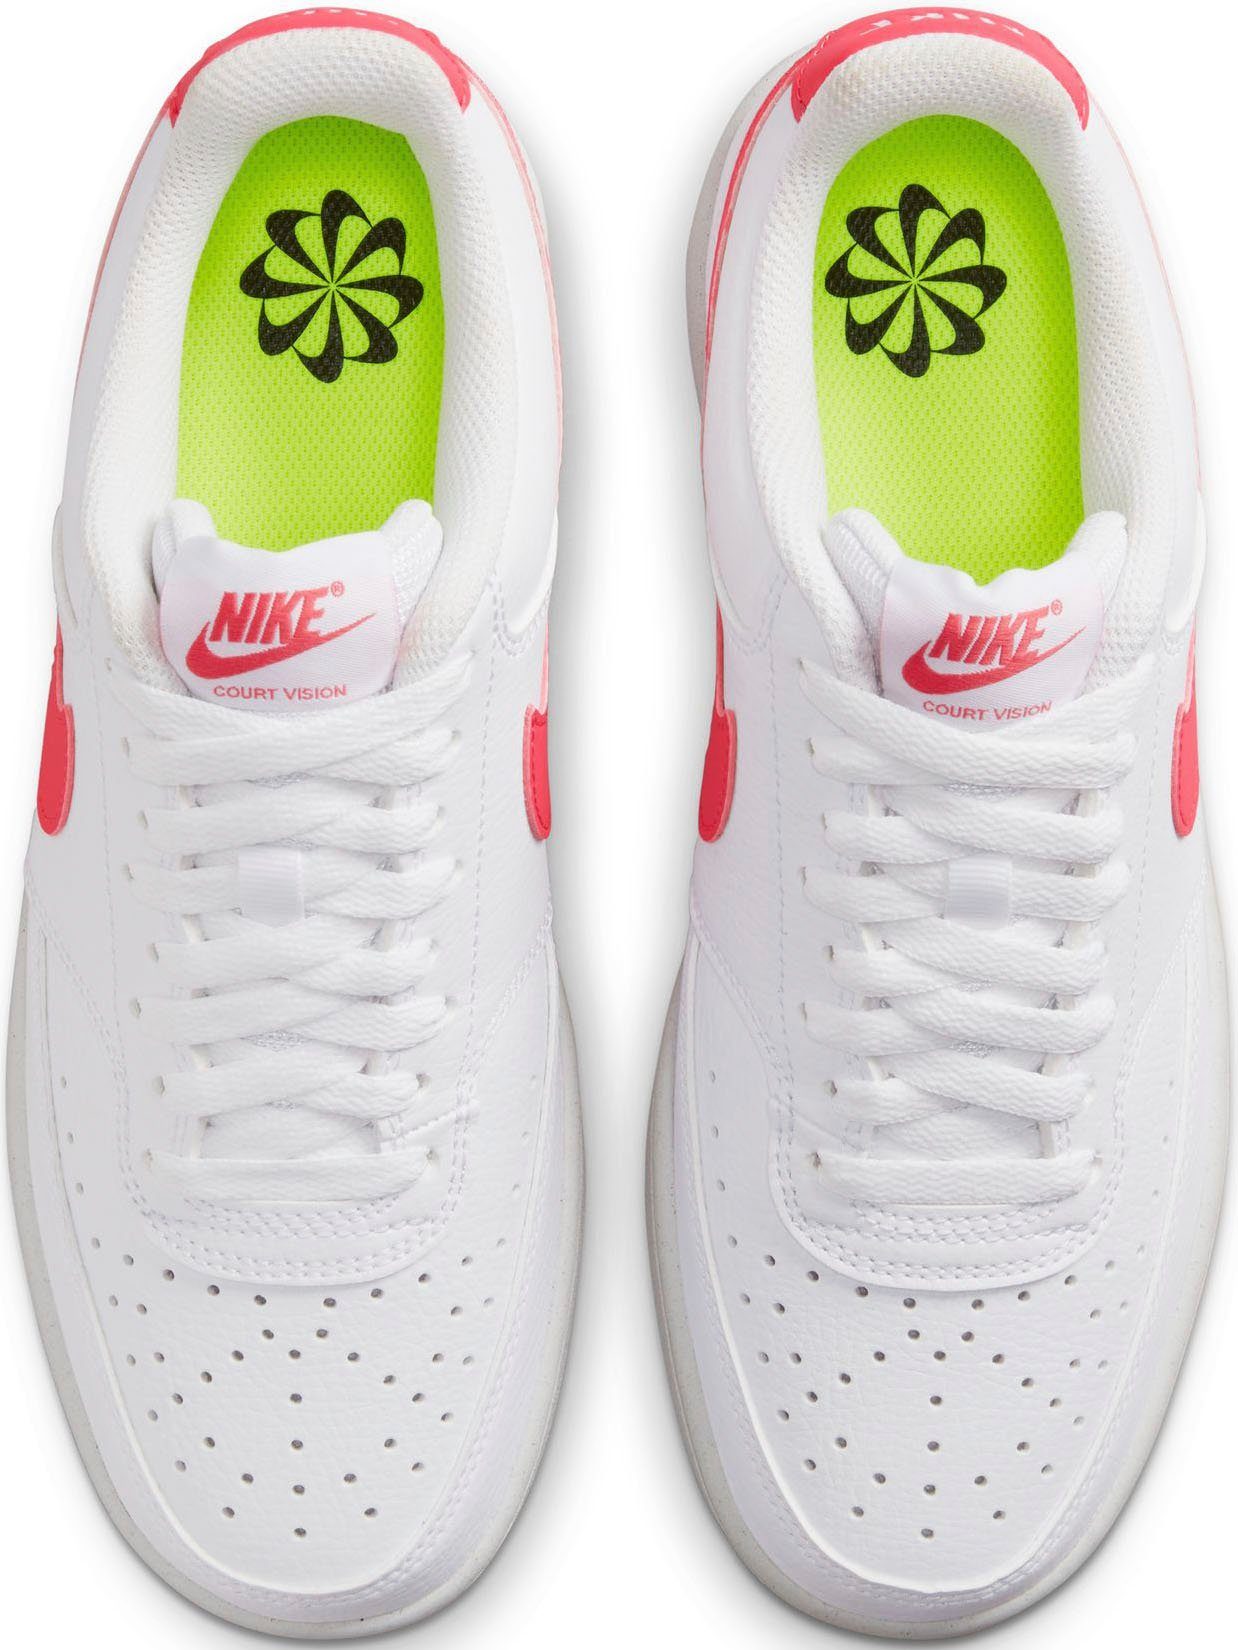 1 Design auf Air VISION Force COURT Spuren Nike LOW den Sneaker Sportswear des